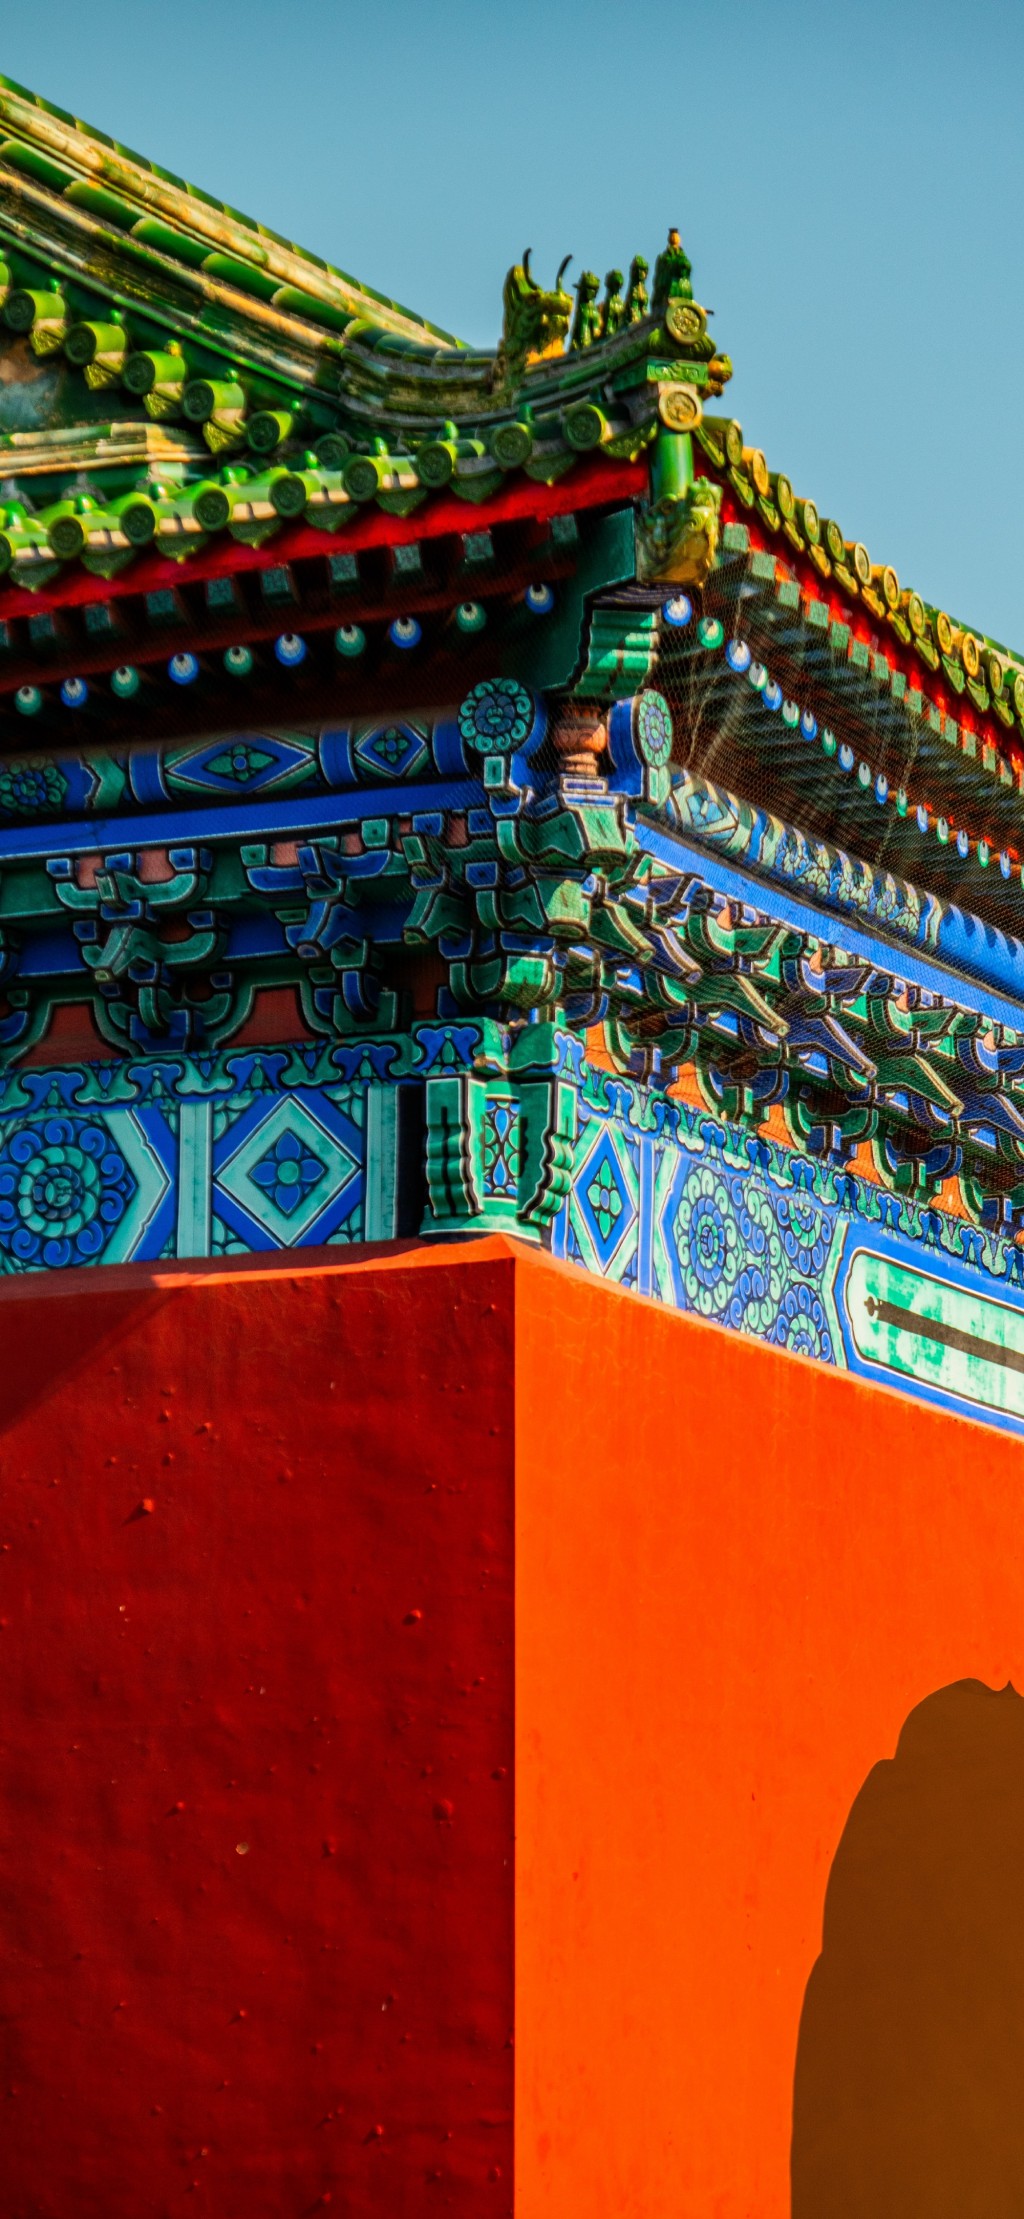 北京古建筑风景手机壁纸